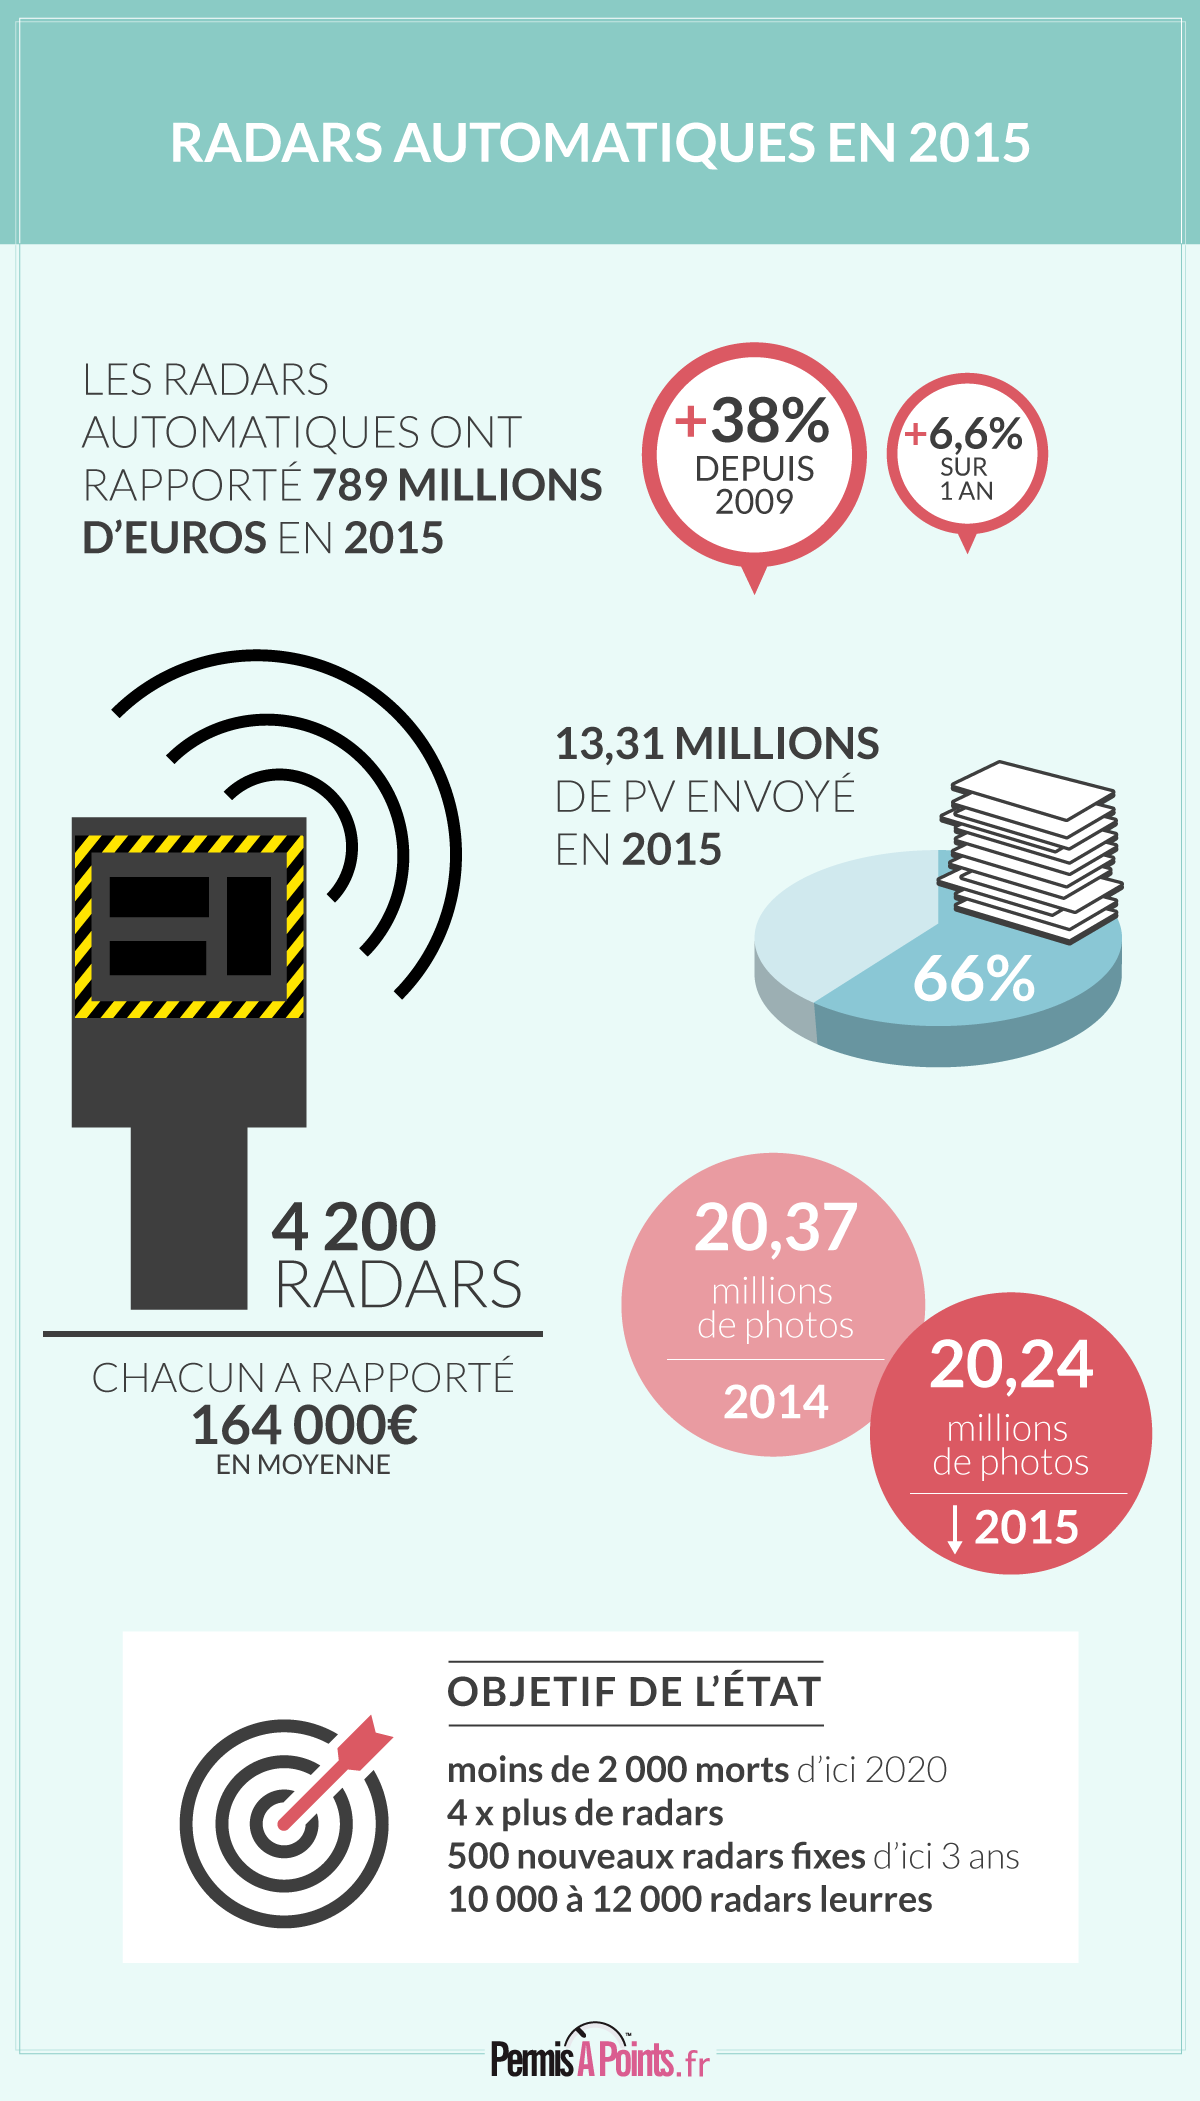 Les radars automatiques ont rapporté 789 millions d'euros en 2015